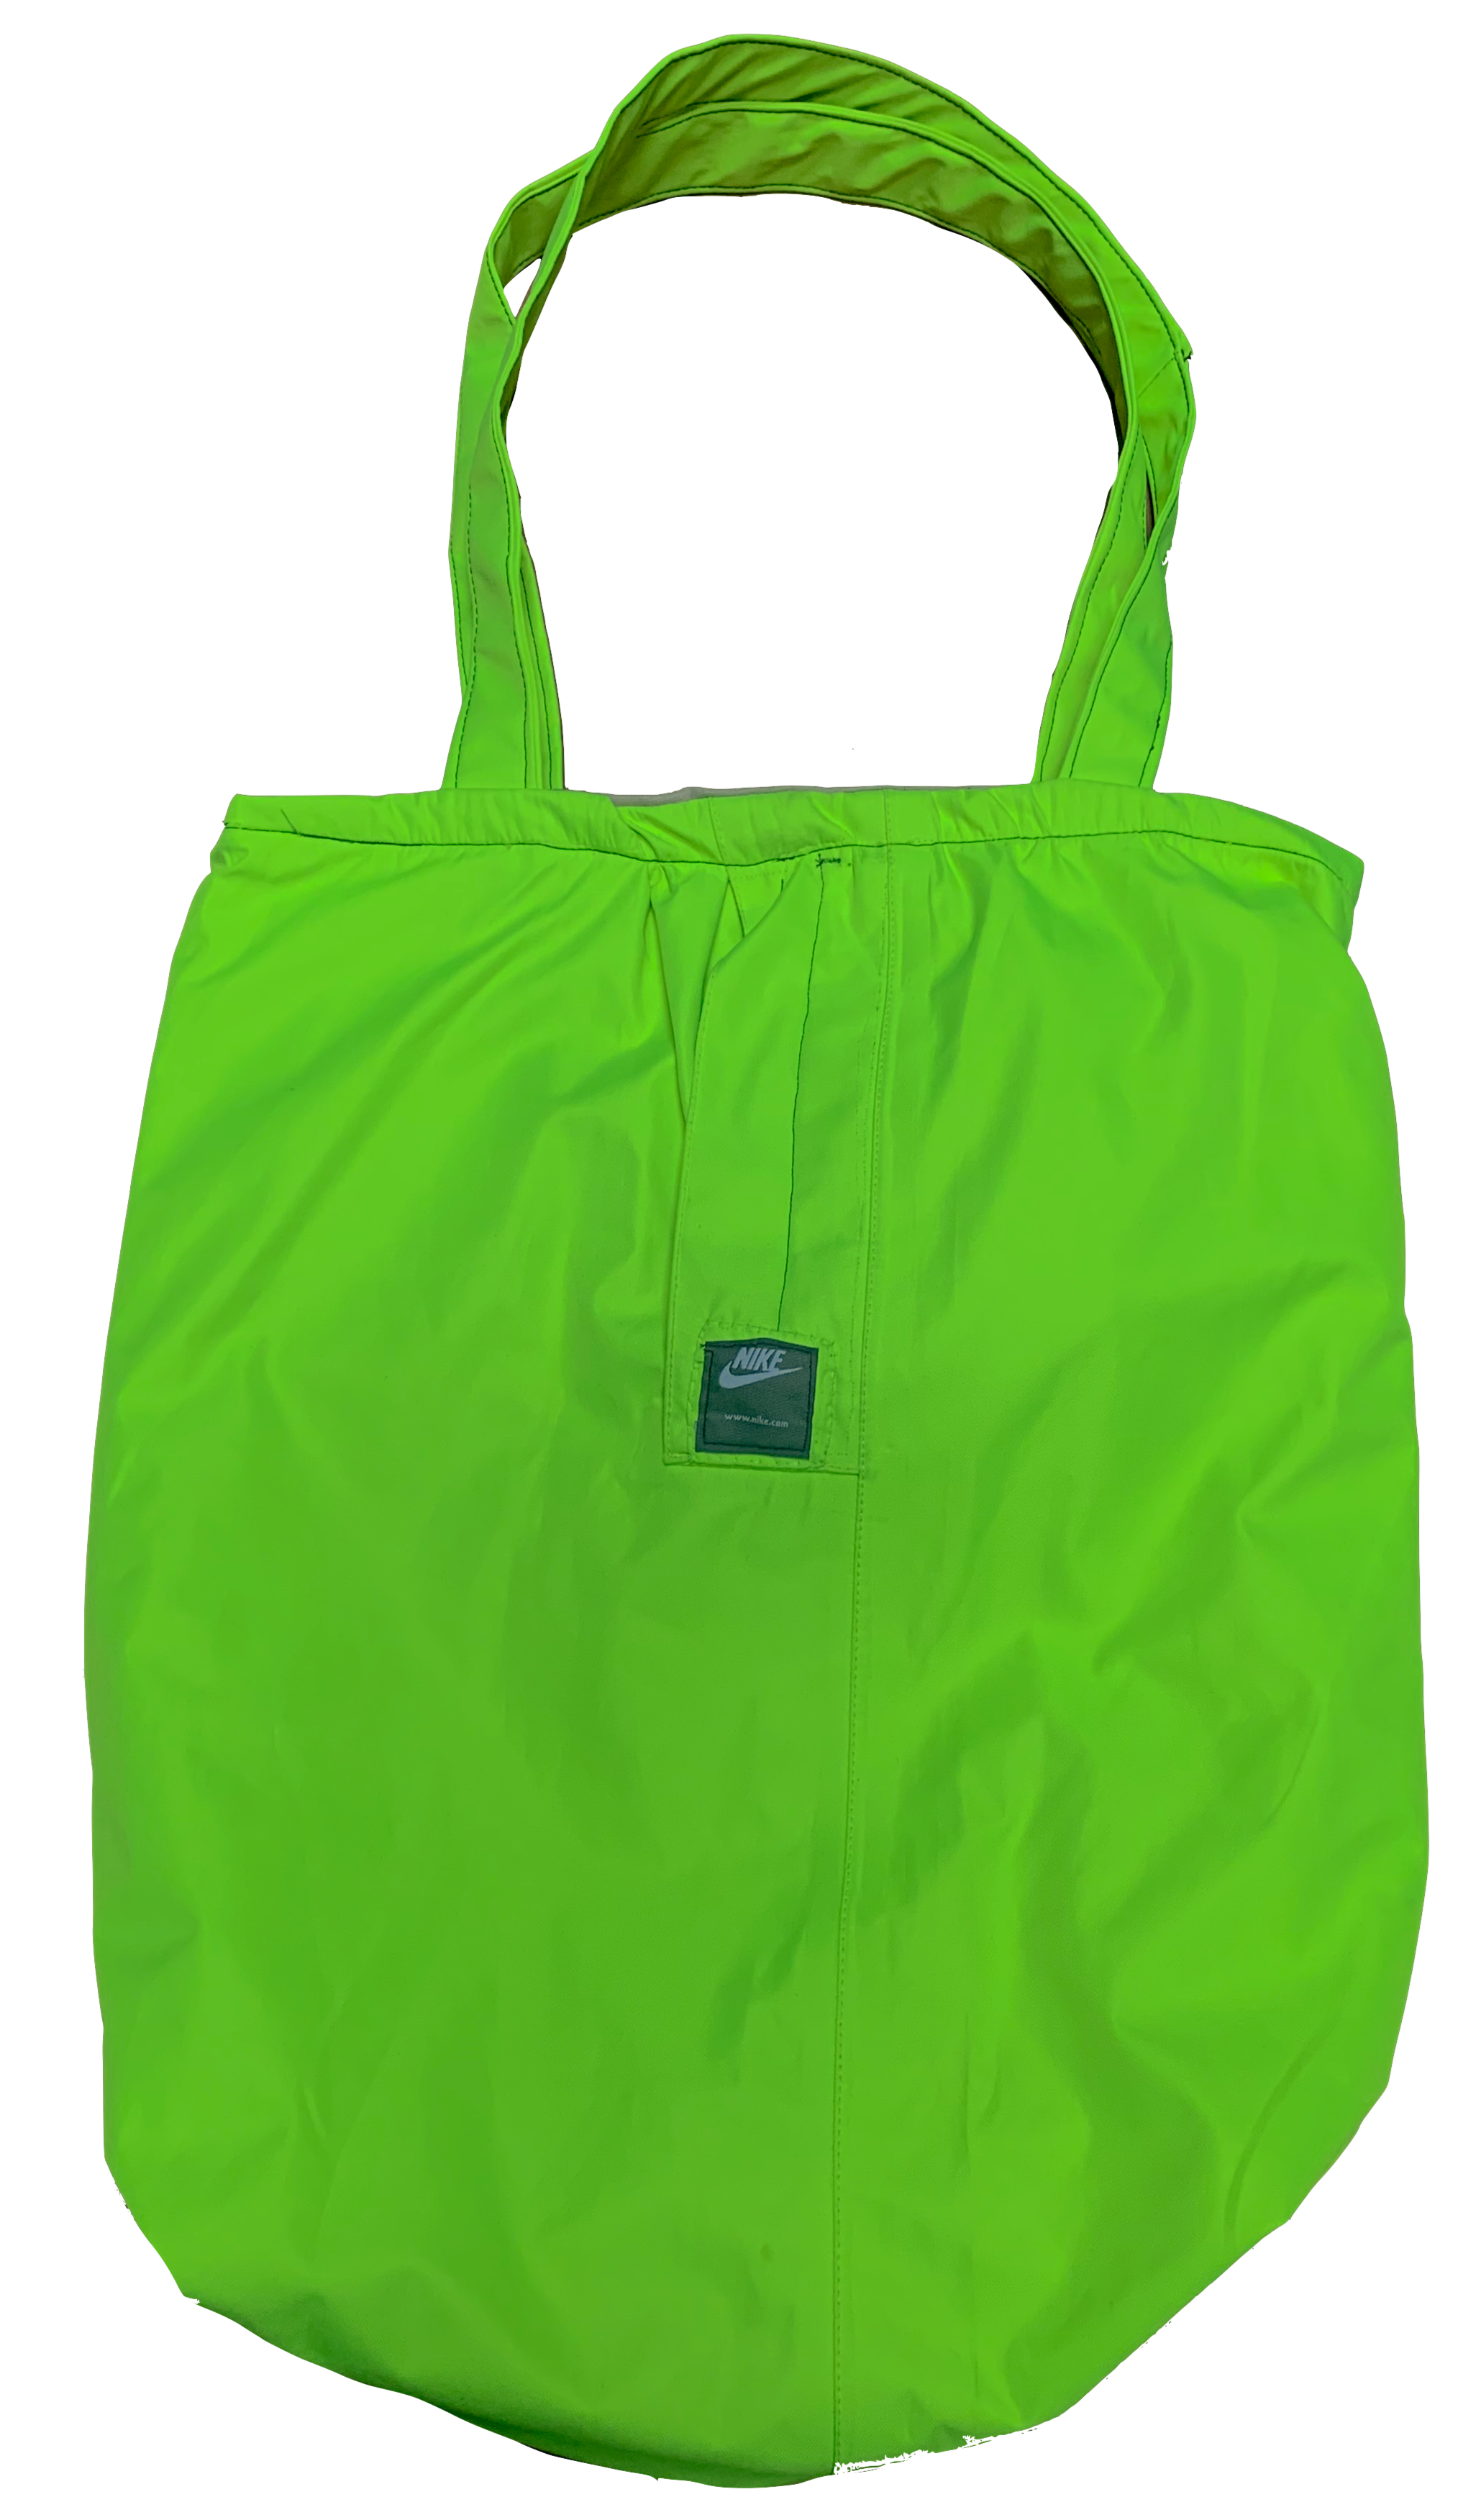 Nike x Rainbird Waterproof Pants Tote Bag